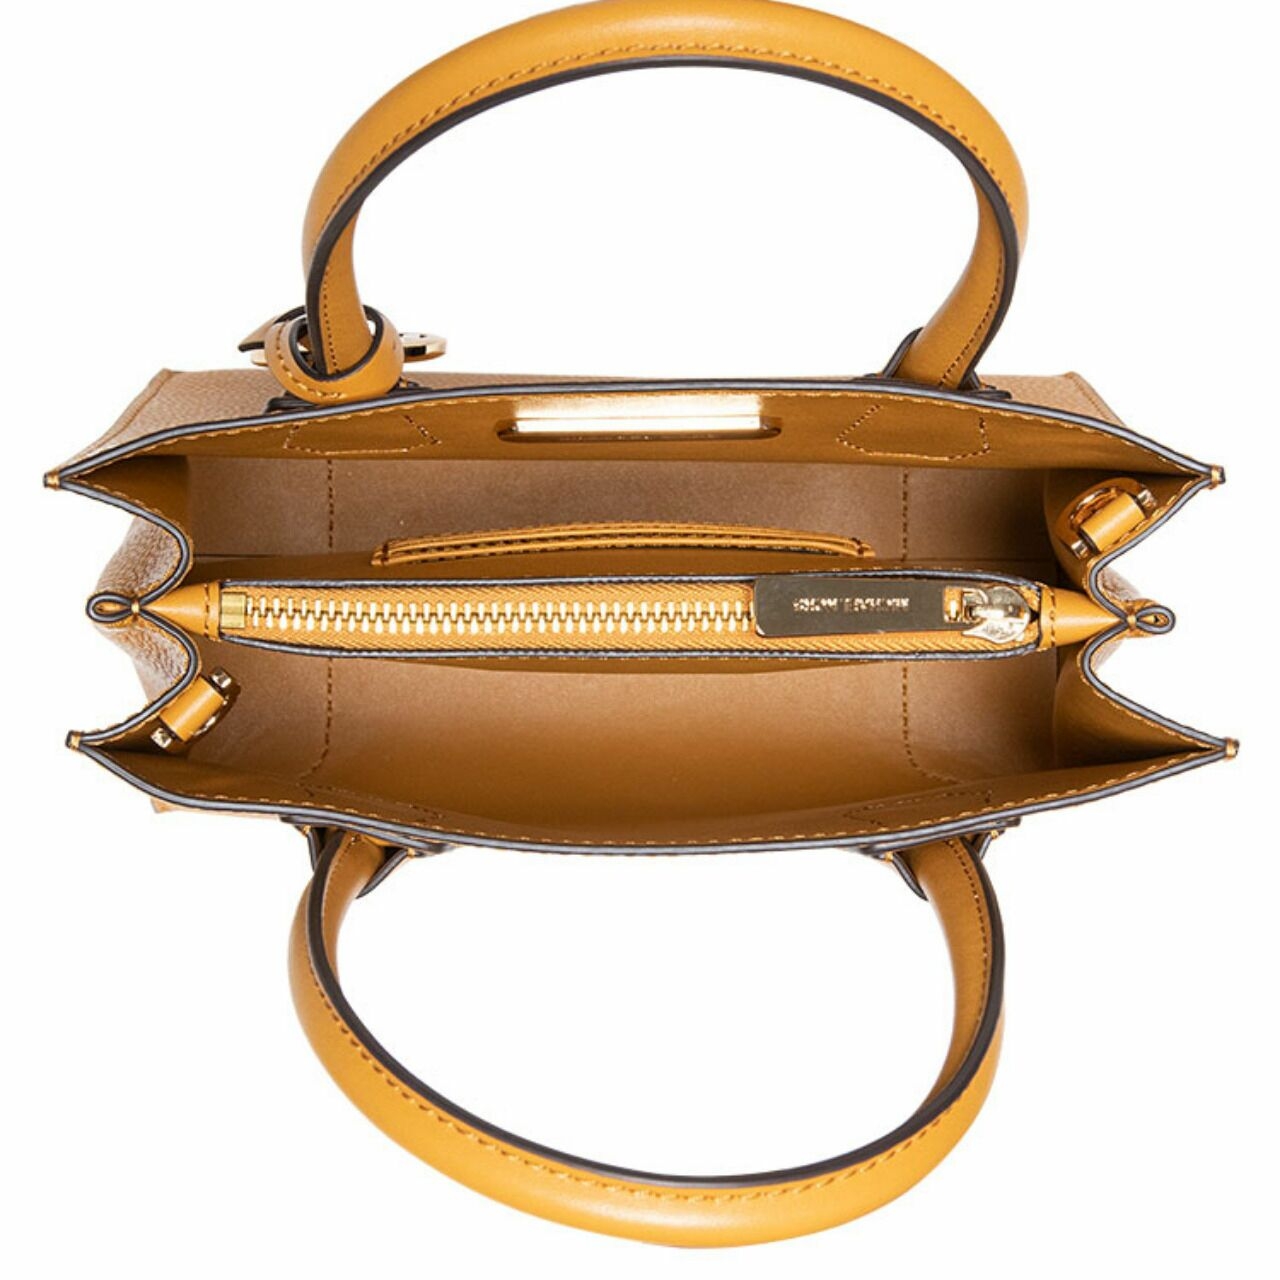 Michael Kors Mercer Leather Medium Messenger Marigold Shoulder Bag